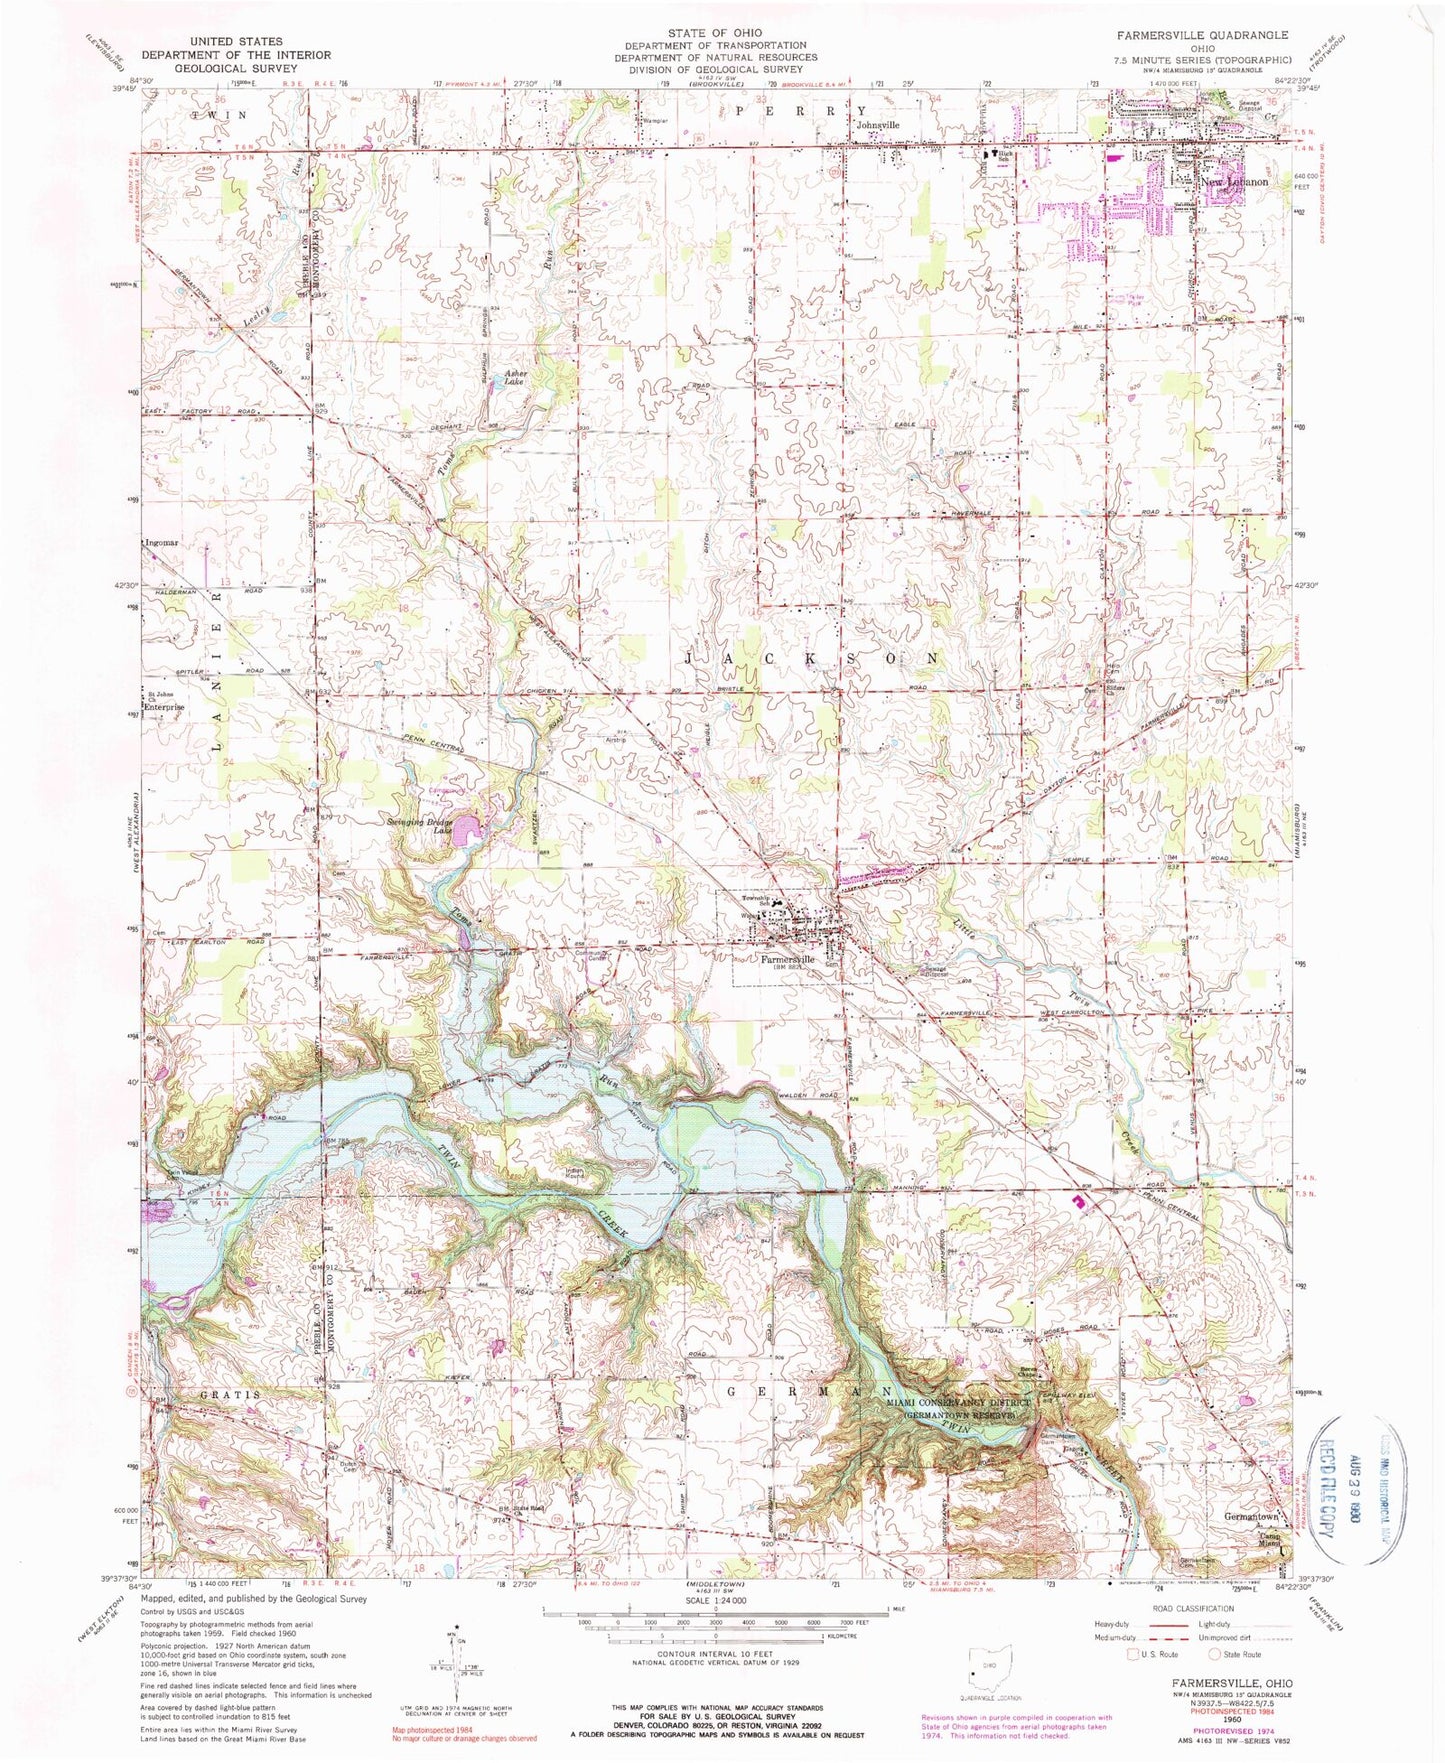 Classic USGS Farmersville Ohio 7.5'x7.5' Topo Map Image